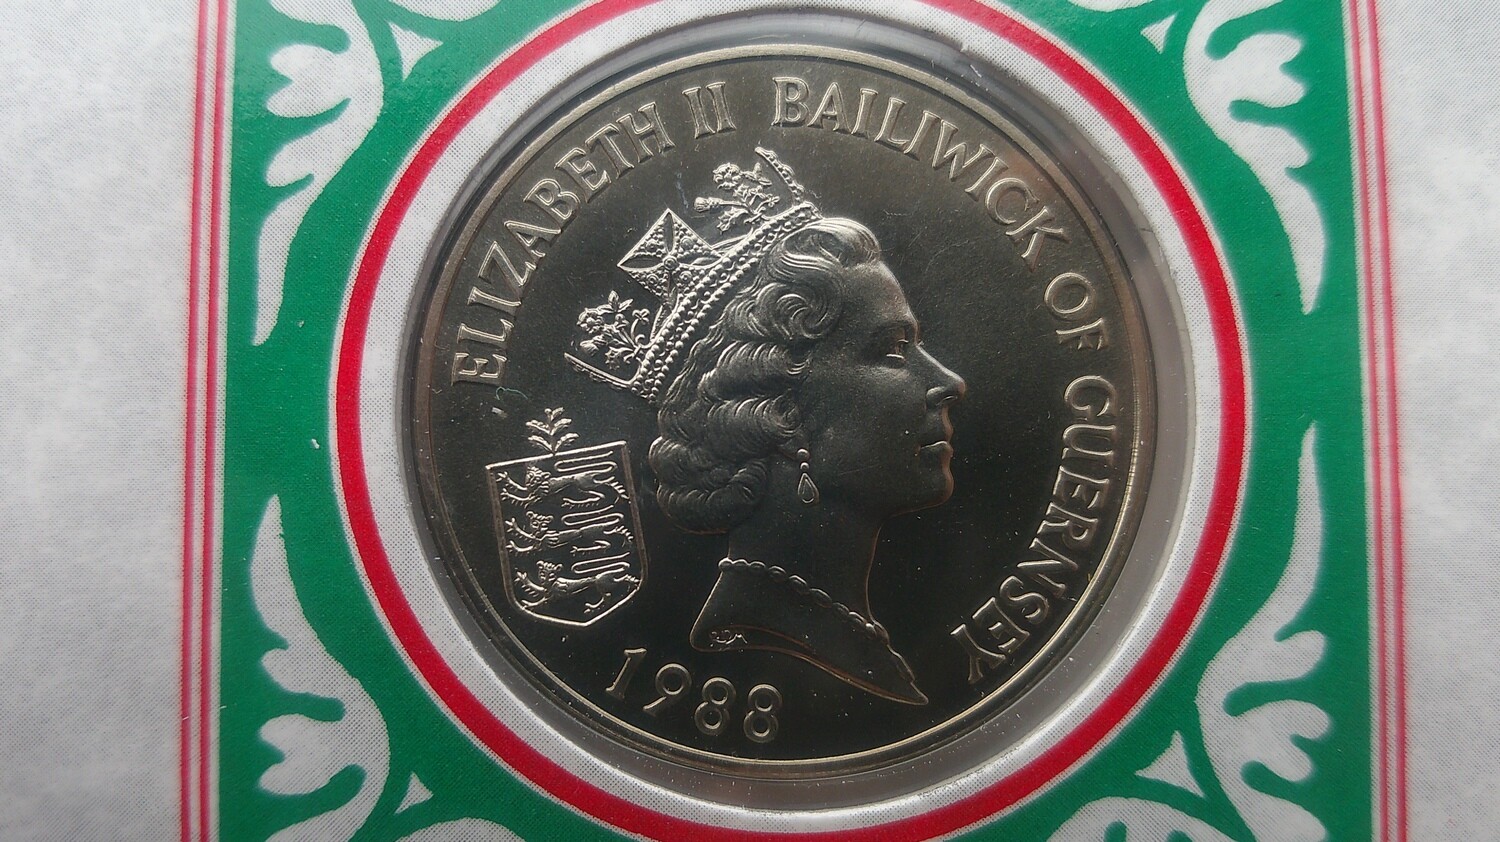 Guernsey Two Pound Crown - 1988 (William II)